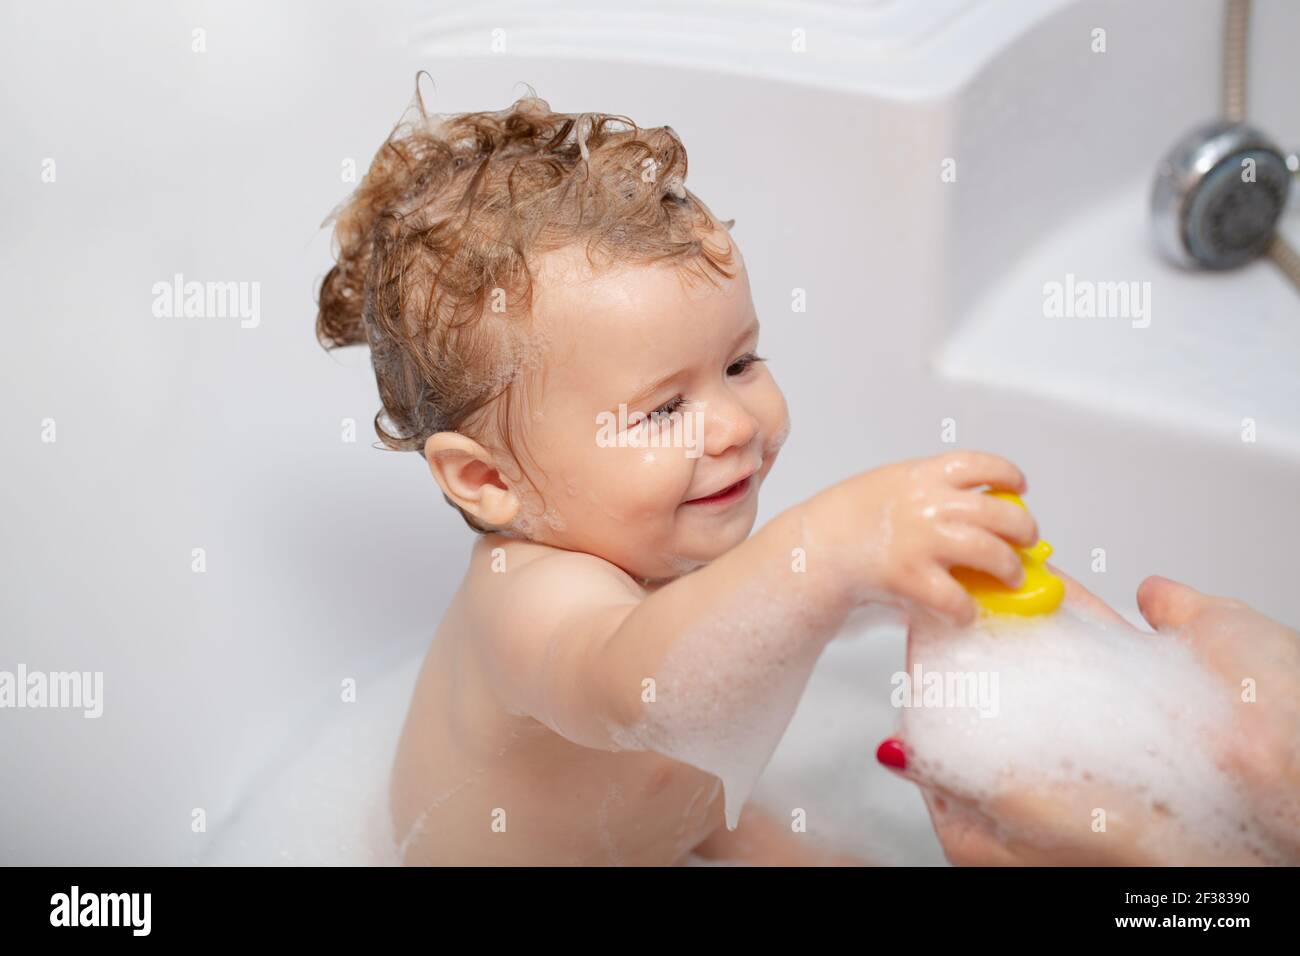 Bébé de bain. Joyeux enfant avec de la mousse de savon sur la tête. Bain  moussant pour enfants Photo Stock - Alamy